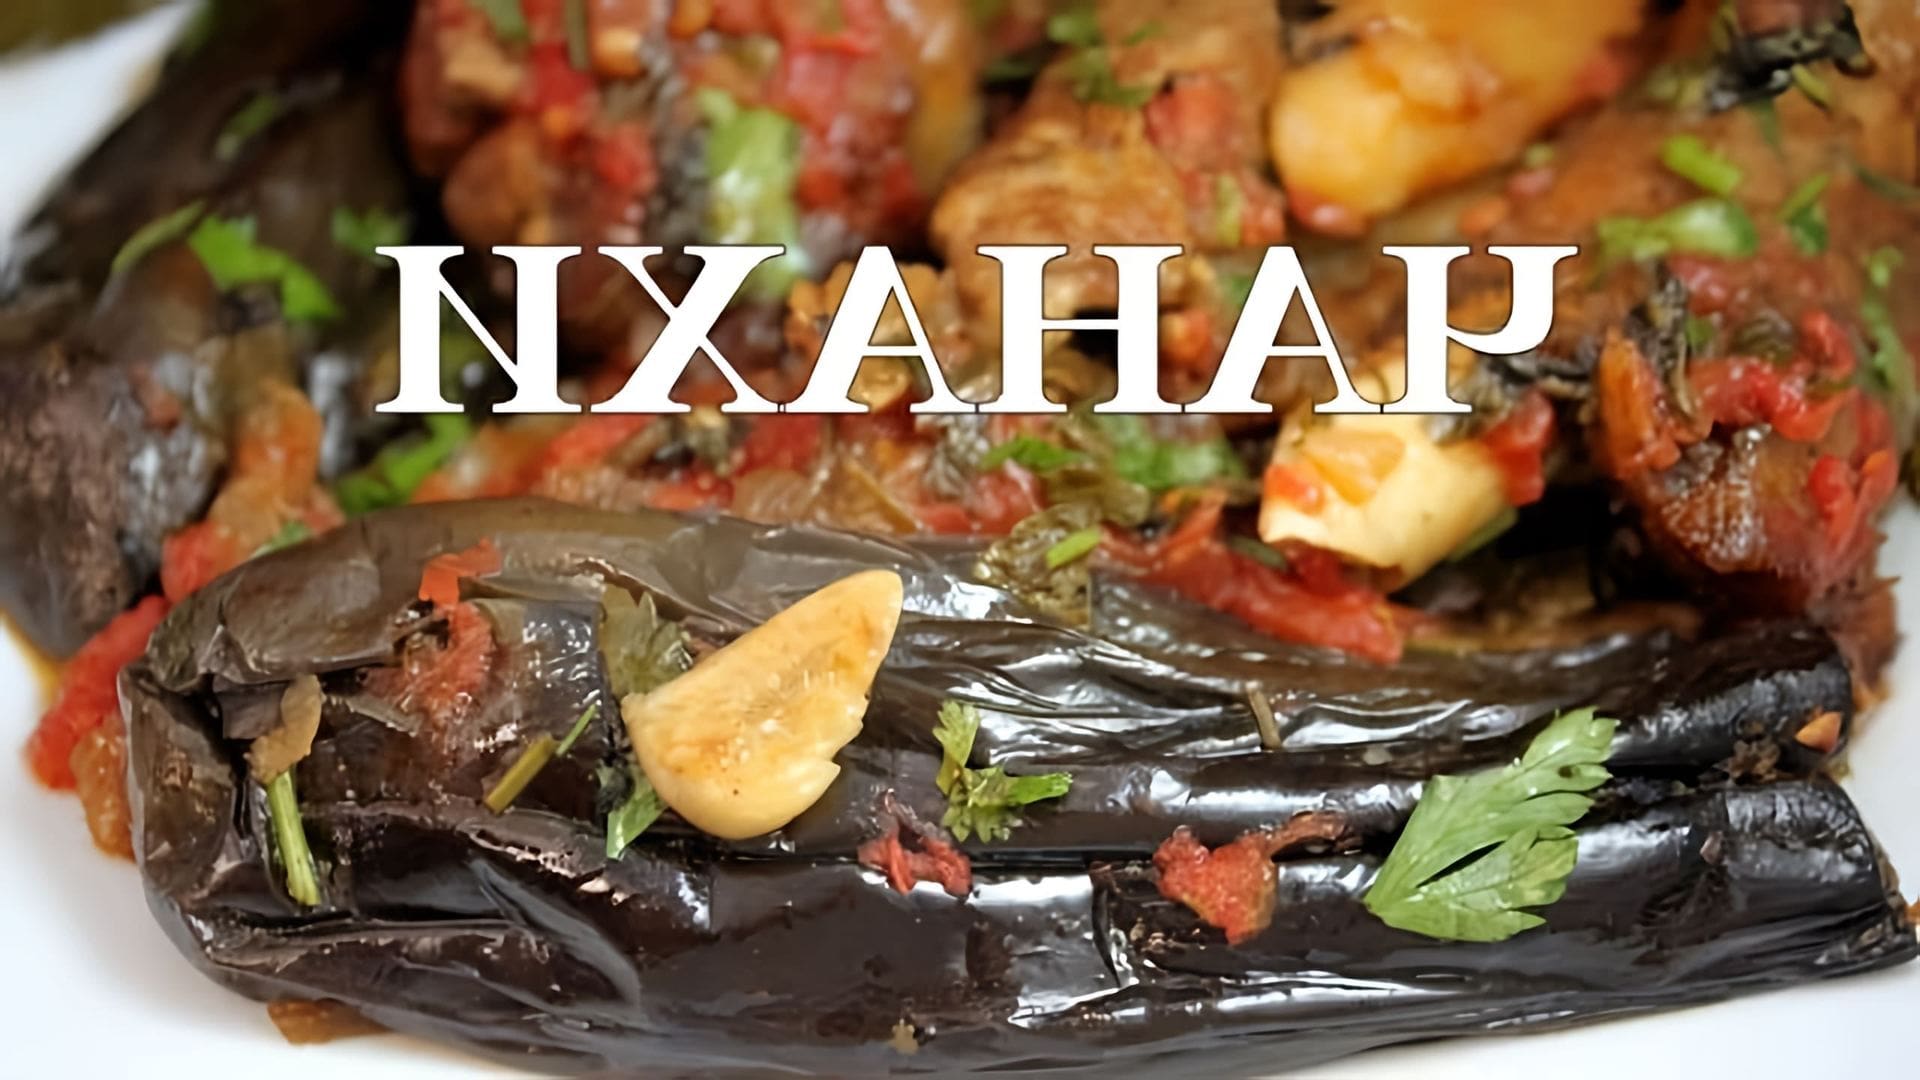 В этом видео демонстрируется процесс приготовления чанахи - традиционного грузинского блюда из мяса и овощей